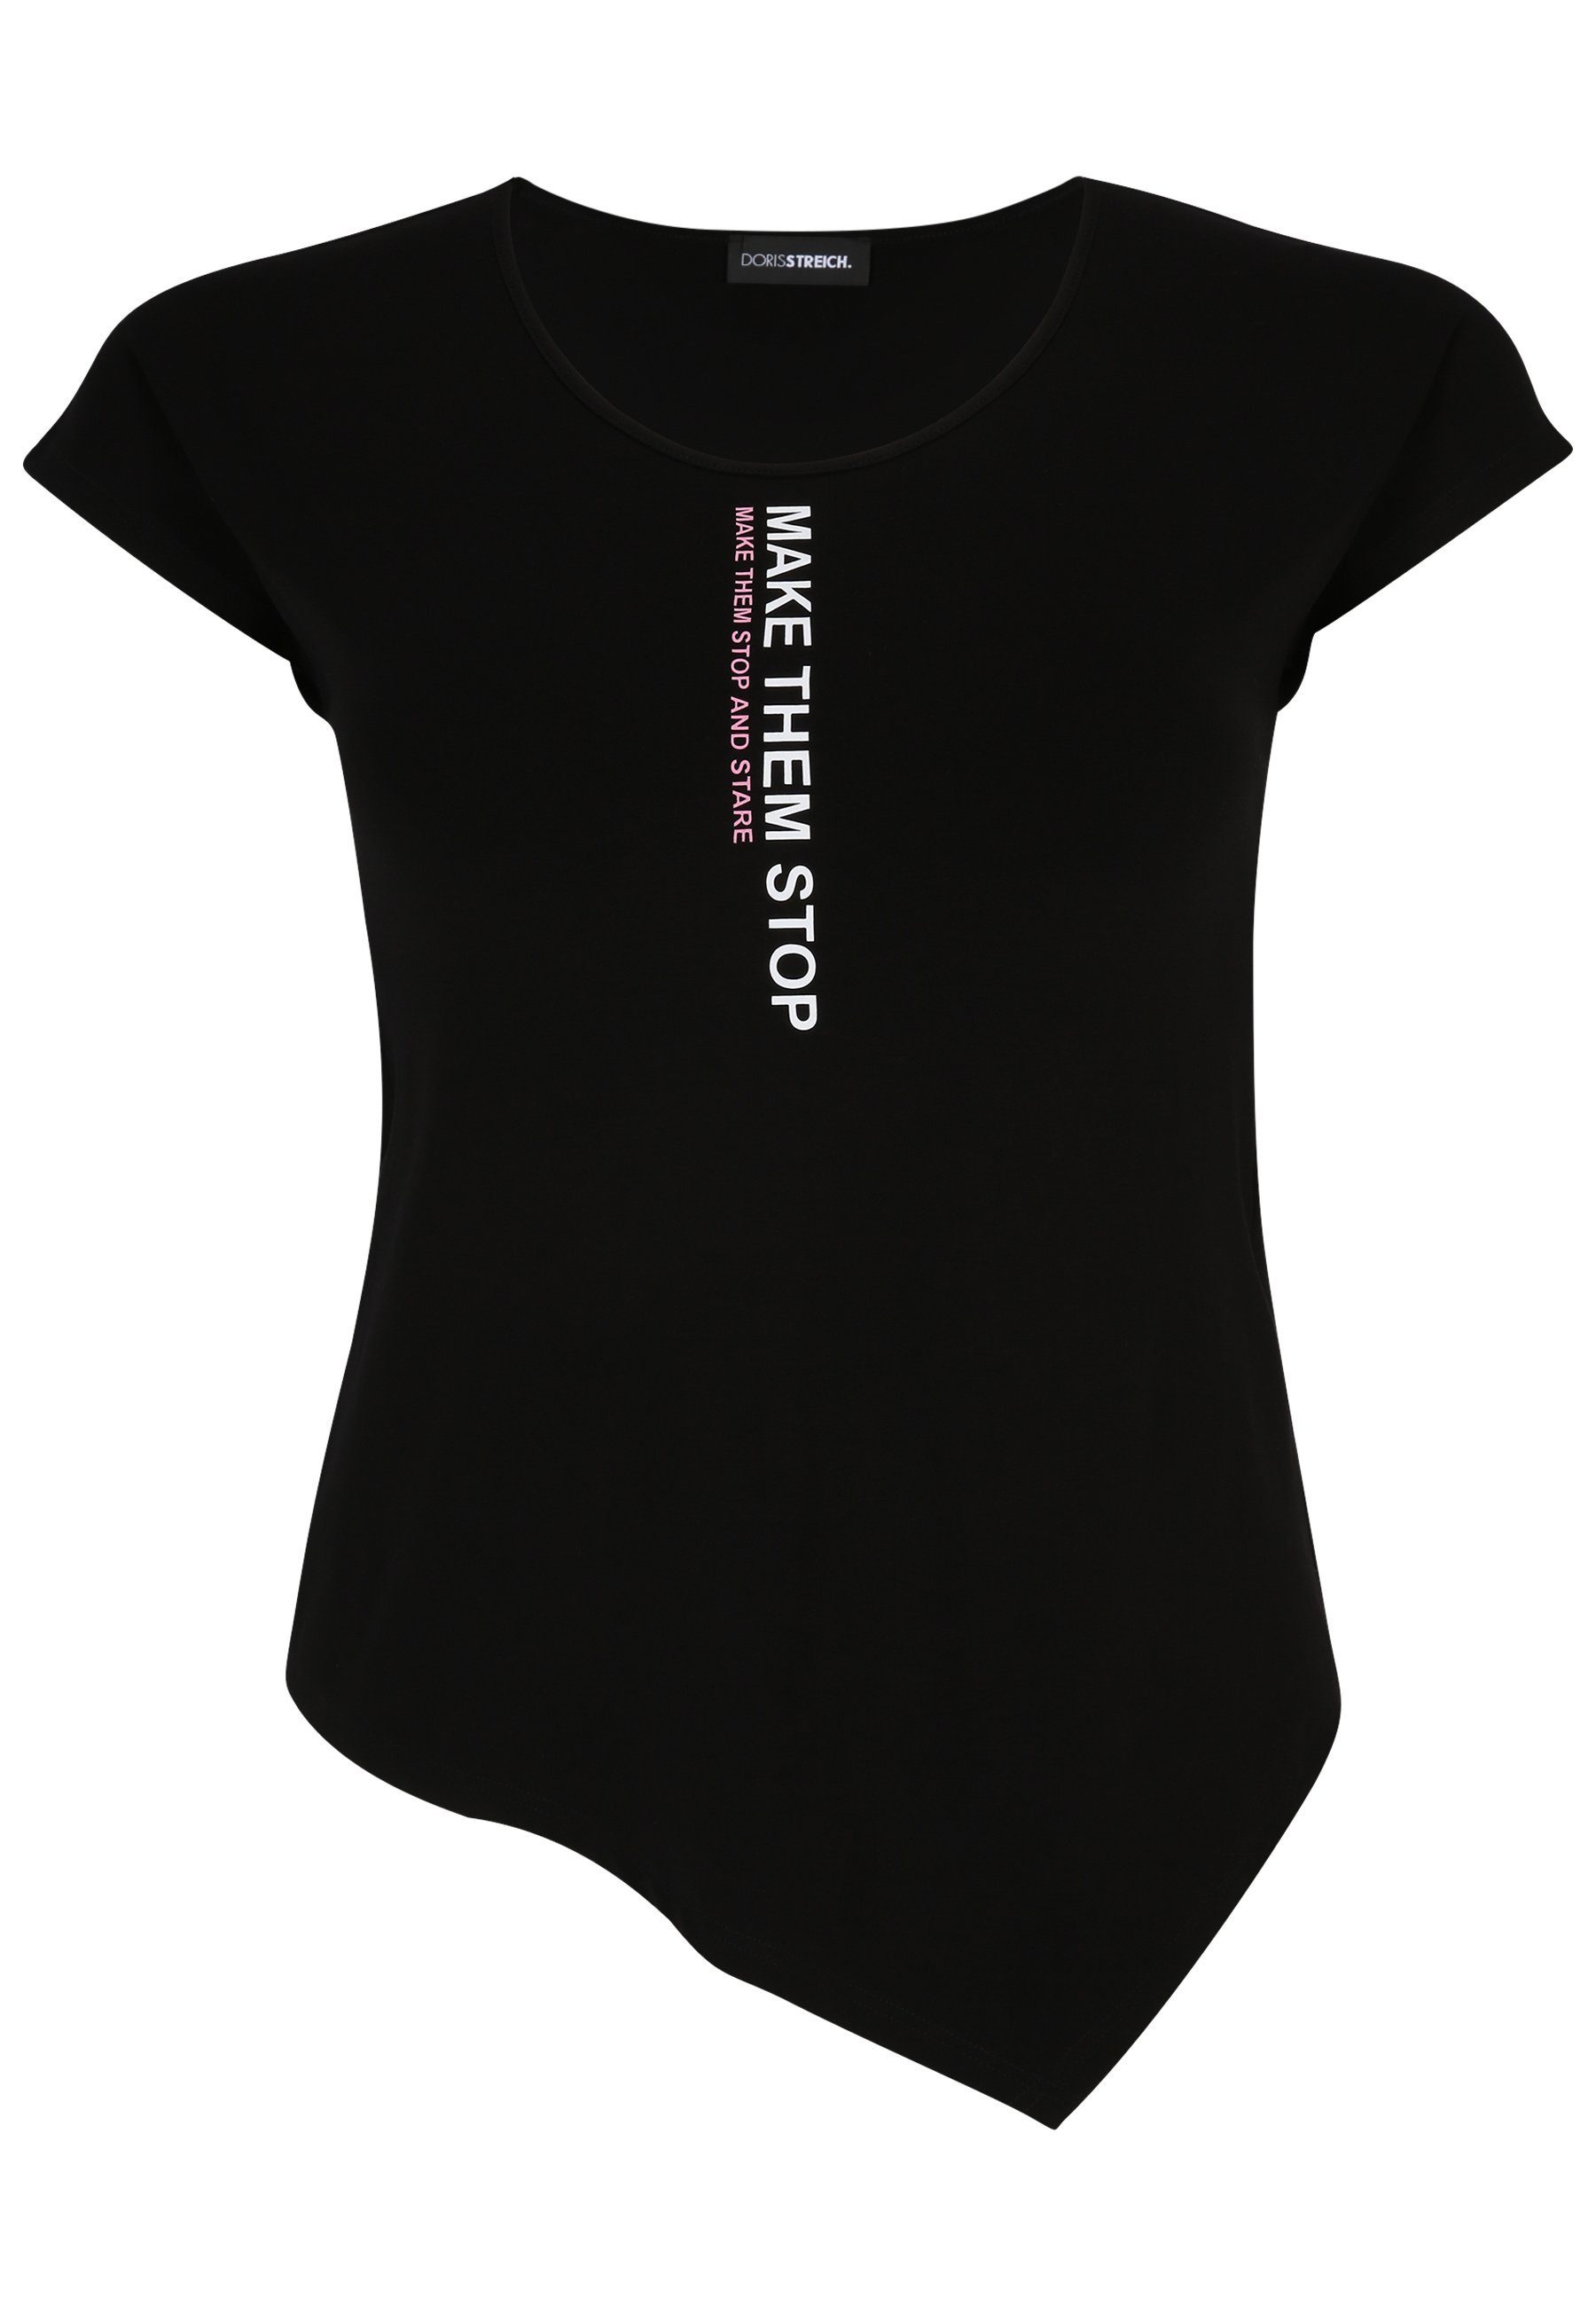 Streich Doris Design mit mit T-Shirt modernem T-Shirt Wording-Motiv